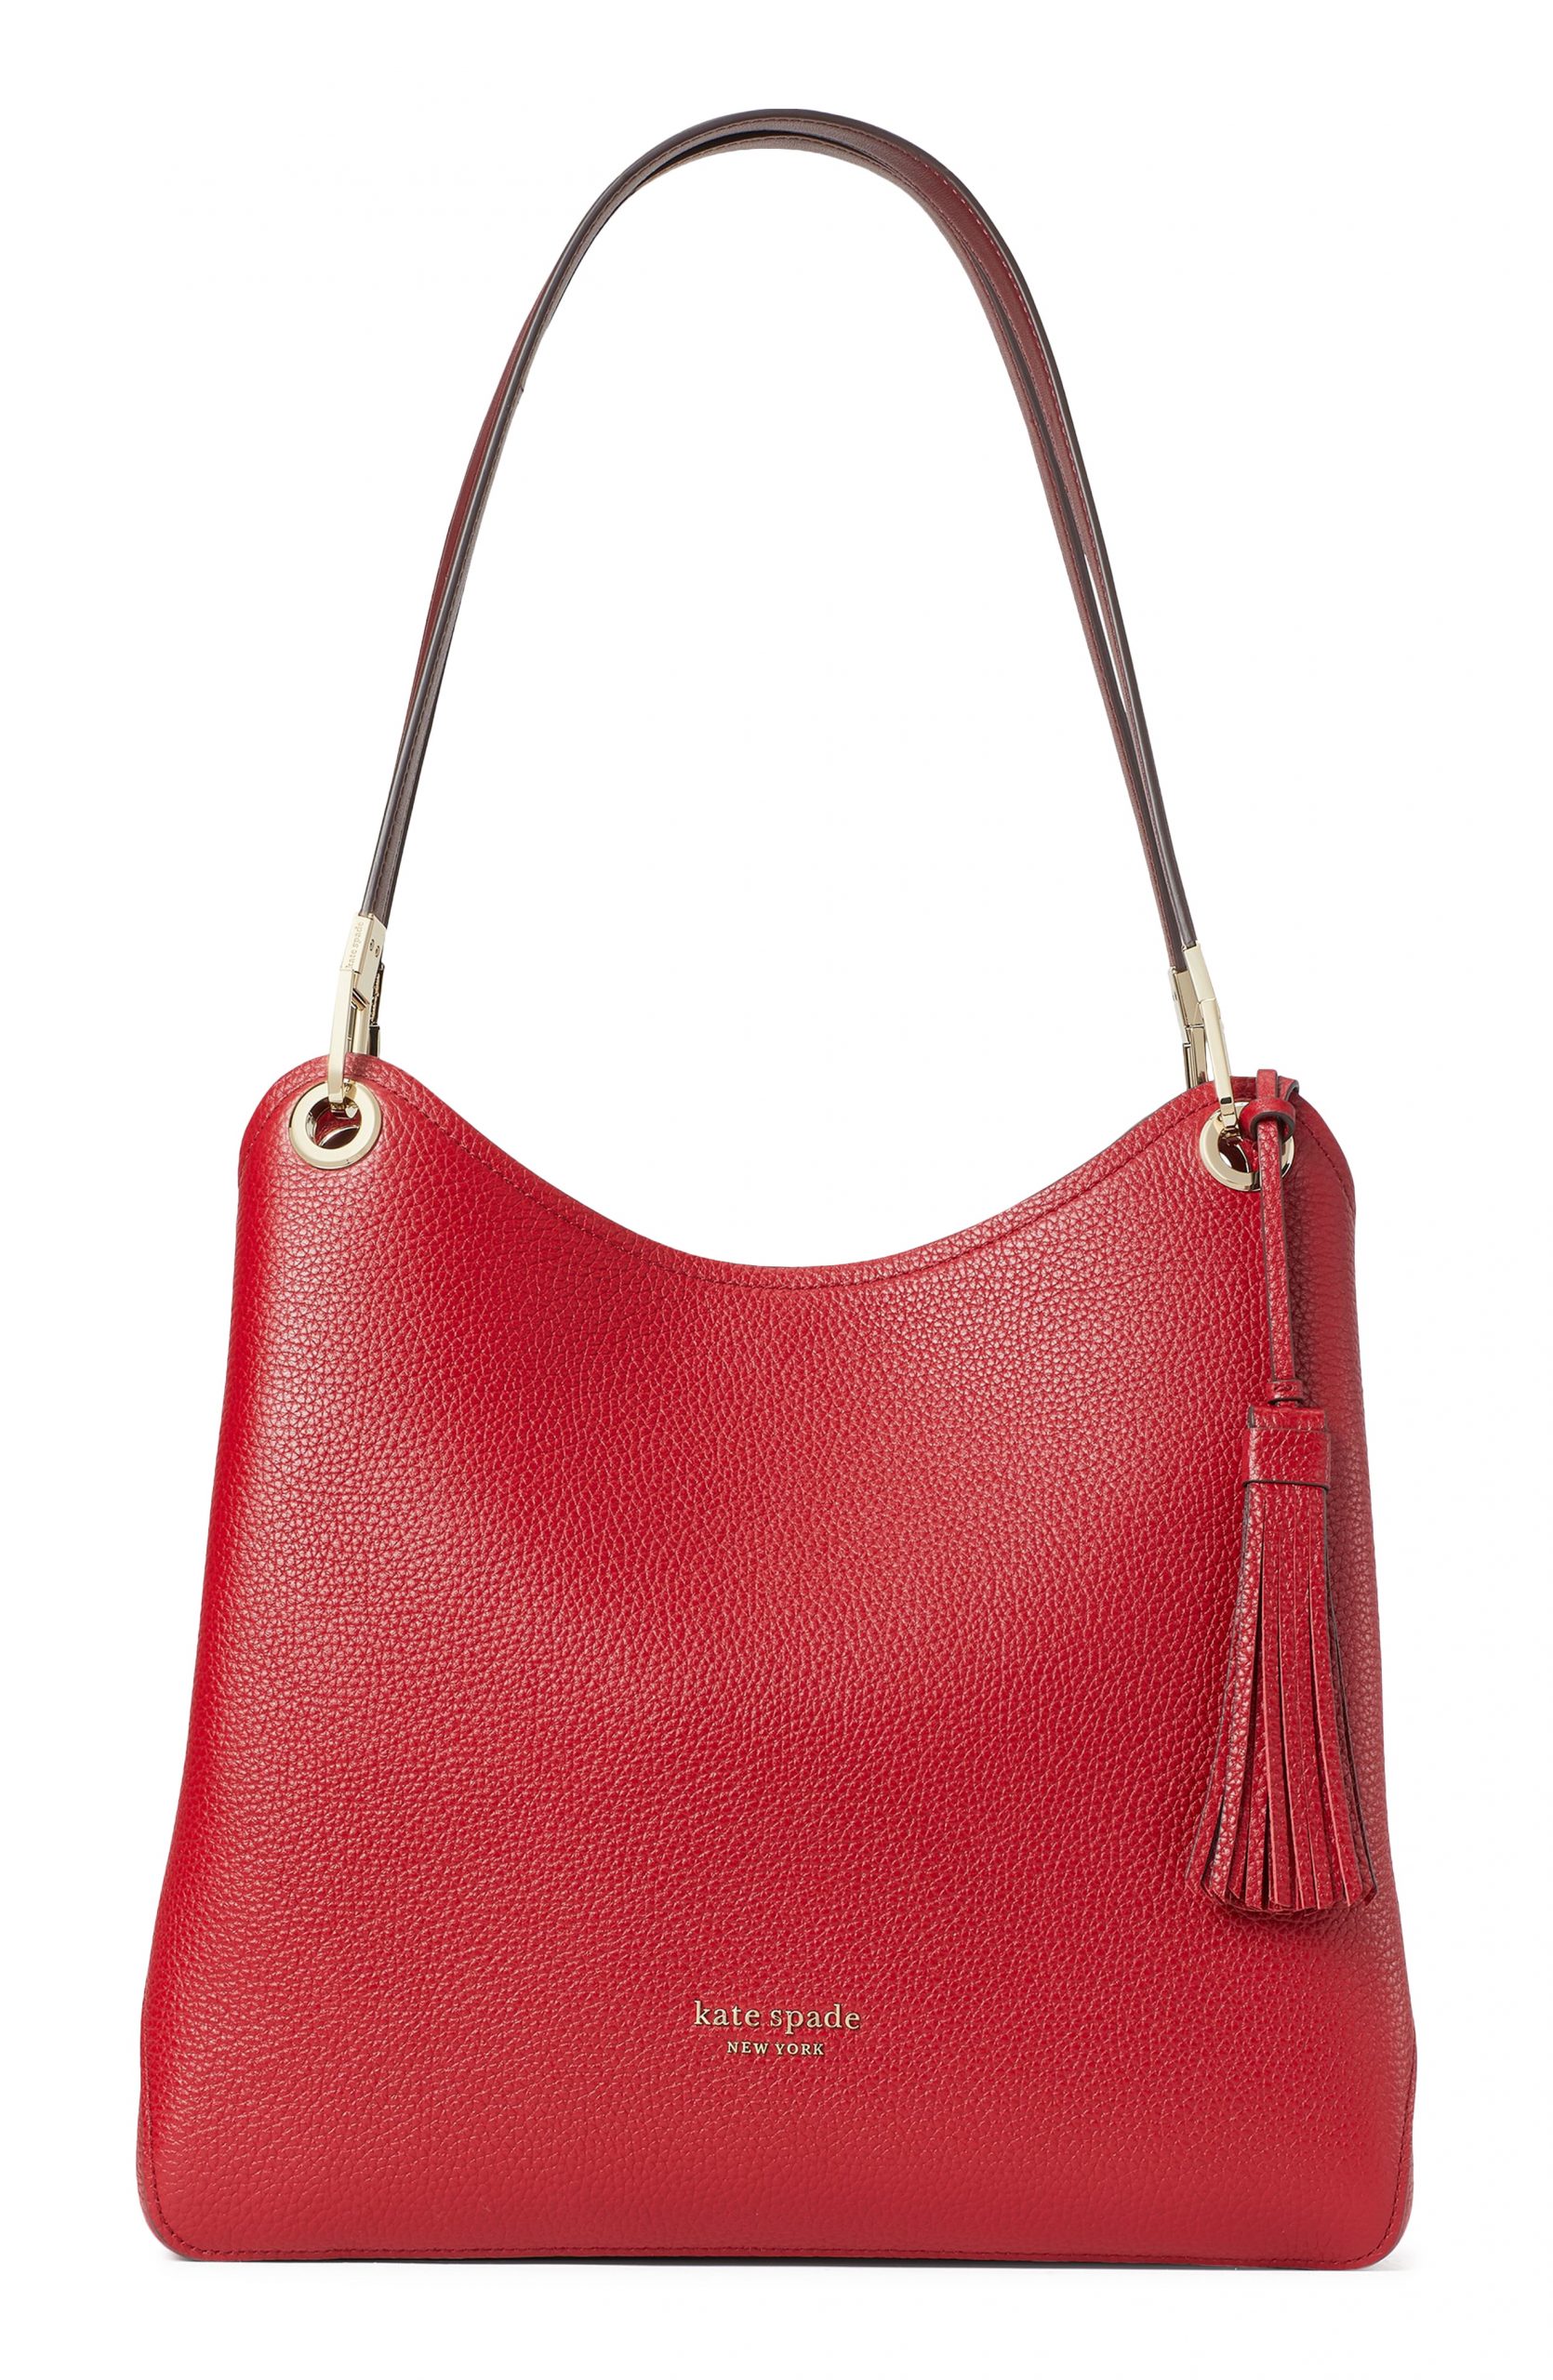 Kate Spade New York Large Loop Leather Shoulder Bag - Red | Fashion